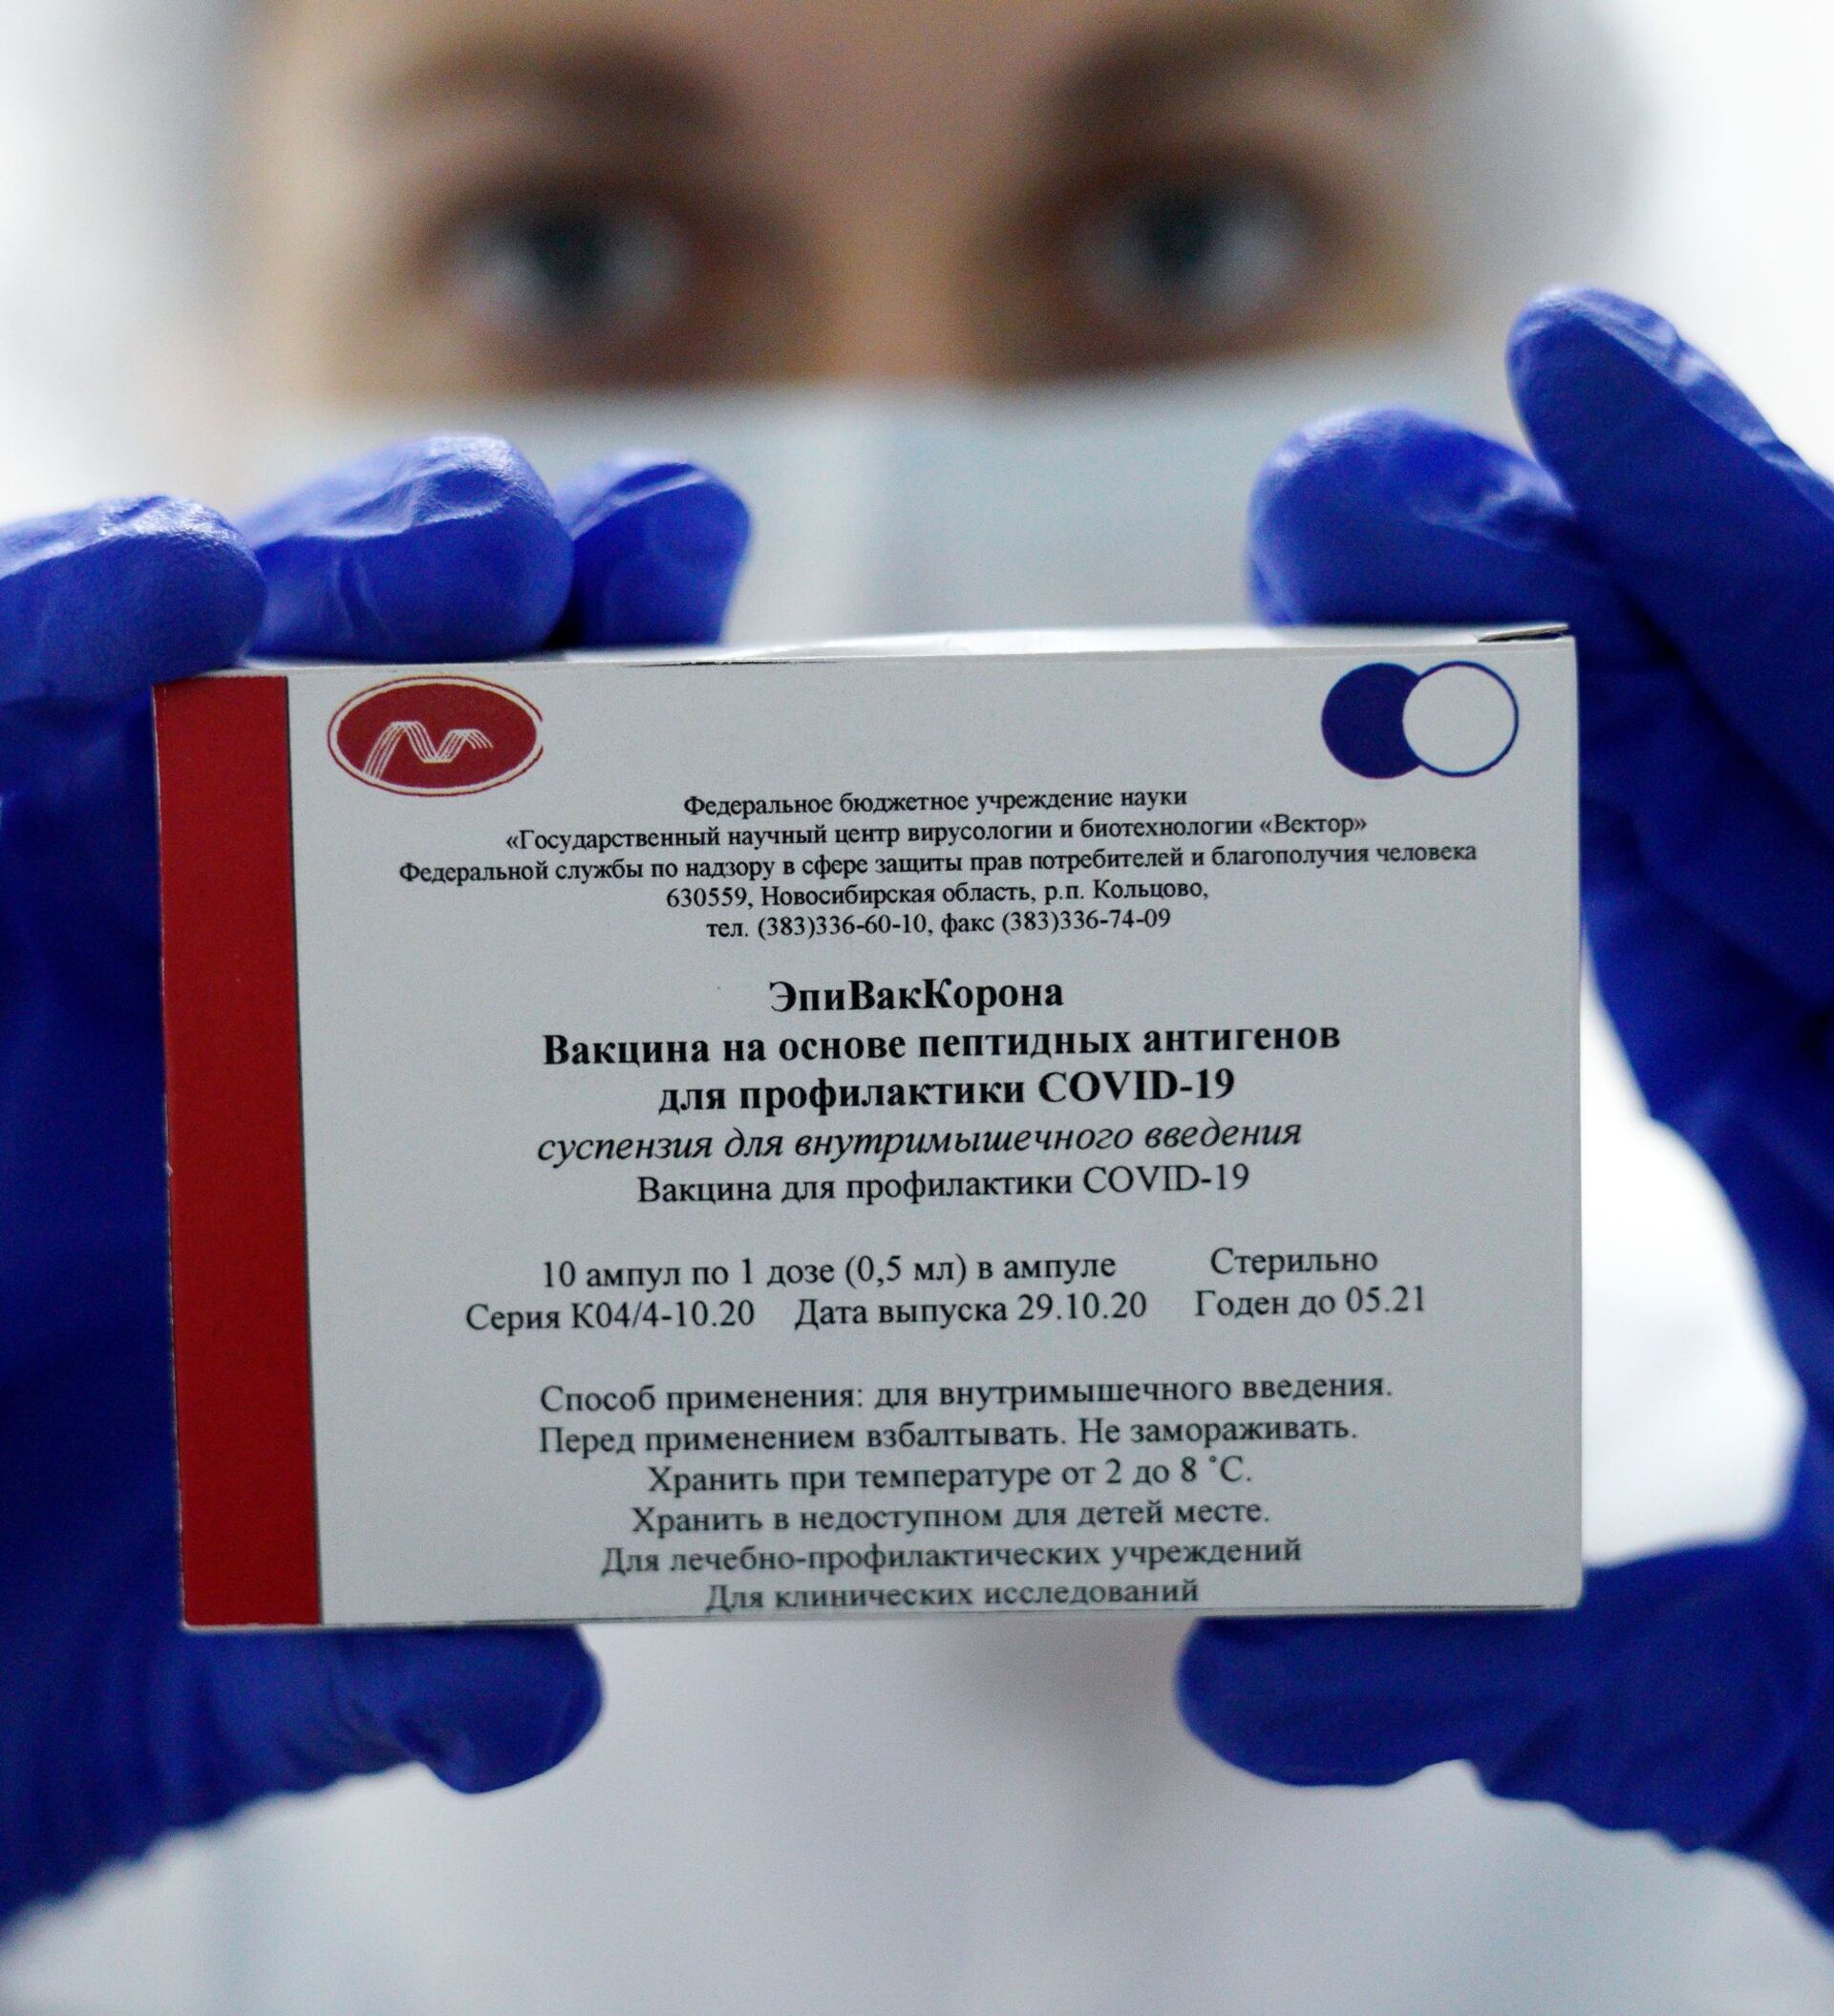 Вакцин написал. Эпиваккорона вакцина. Новосибирская вакцина эпиваккорона. Вакцина от коронавируса эпиваккорона.